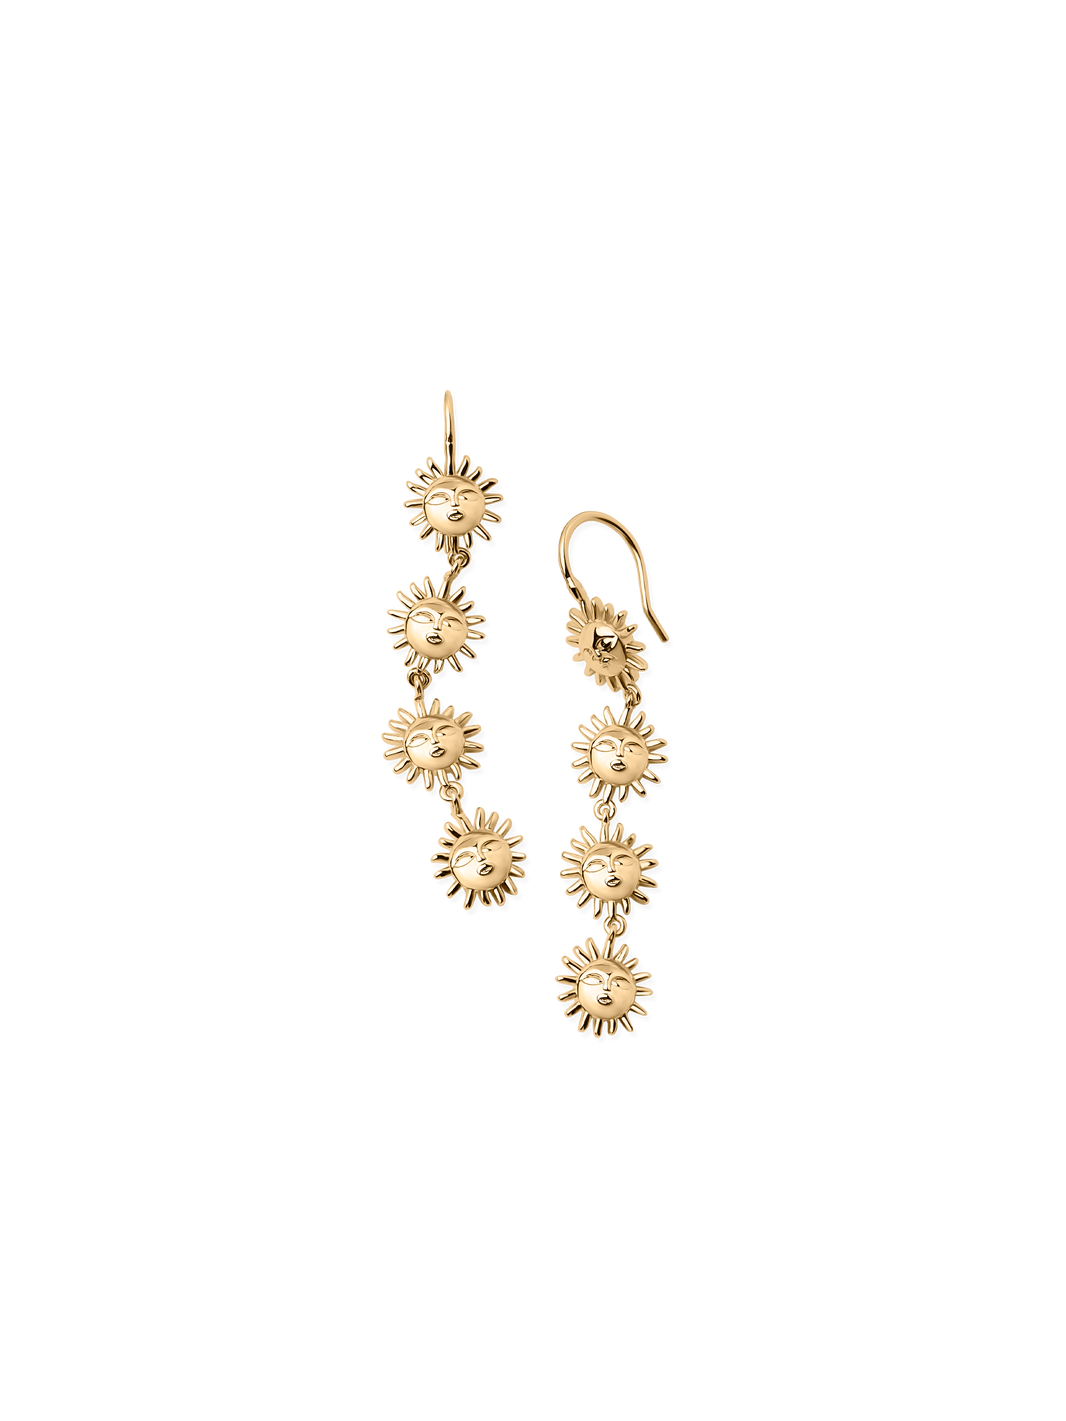  sun earring 18k gold plated brass